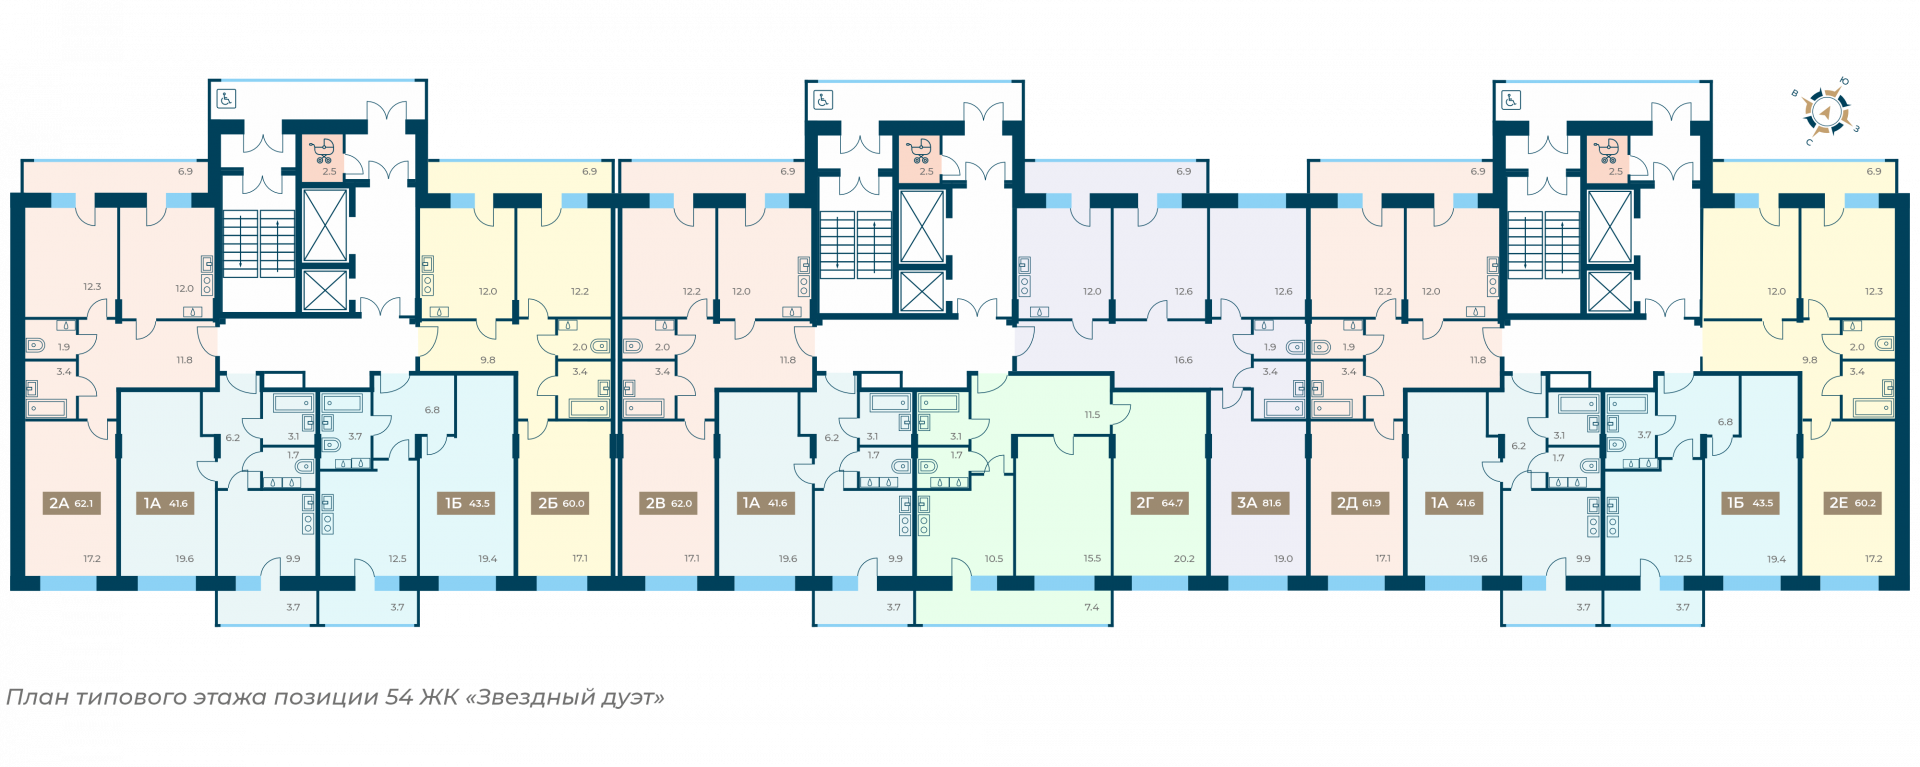 План этажа позиции 54 ЖК Звездный дуэт СЗ Альтаир.png